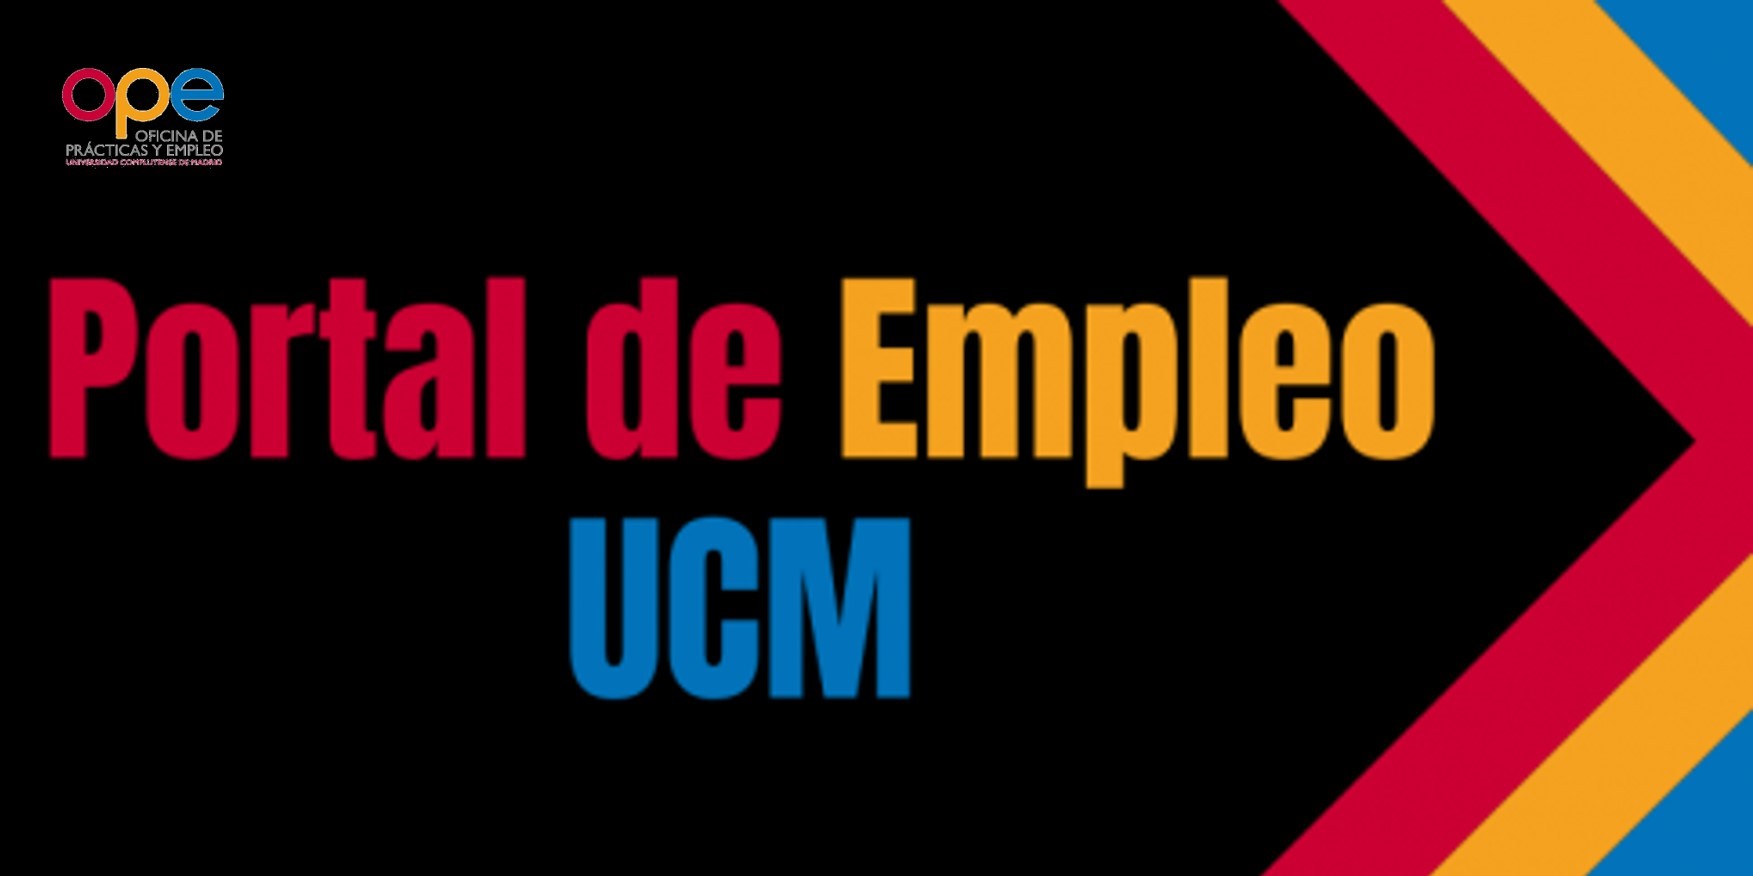 Nuevo acceso al Portal de Empleo UCM